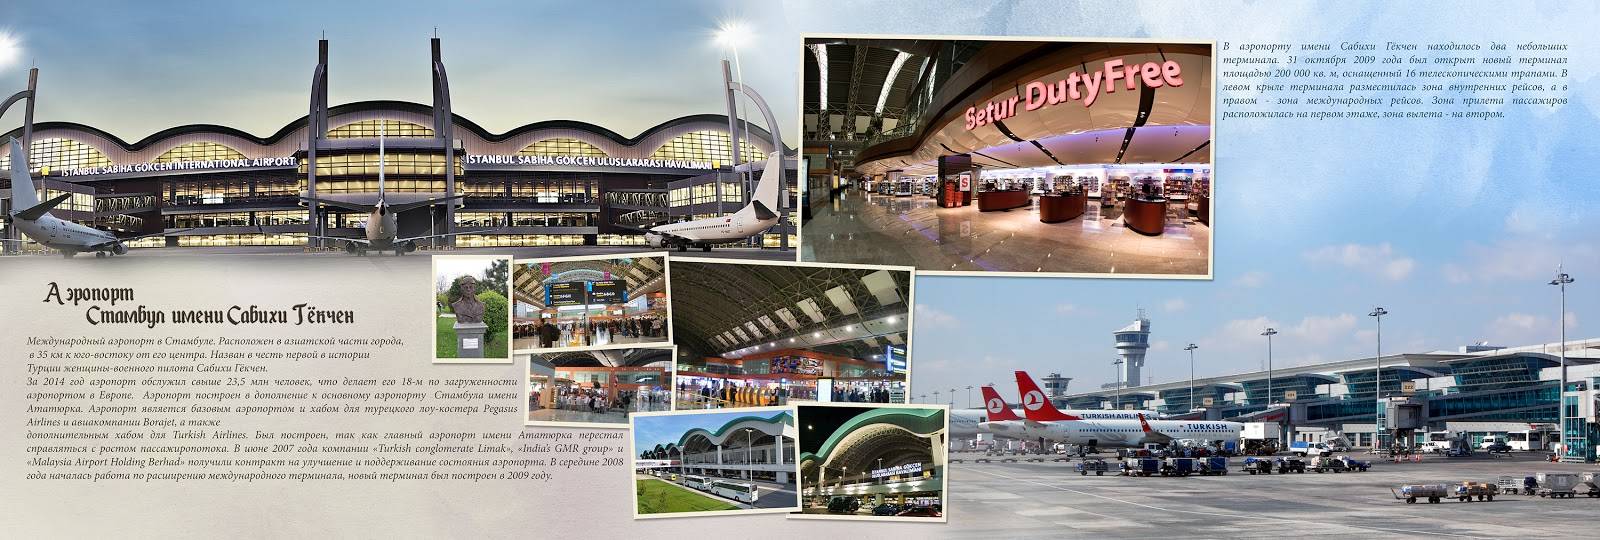 Аэропорт сабиха в стамбуле: онлайн табло аэропорта сабиха гекчен, официальный сайт, как добраться до центра стамбула